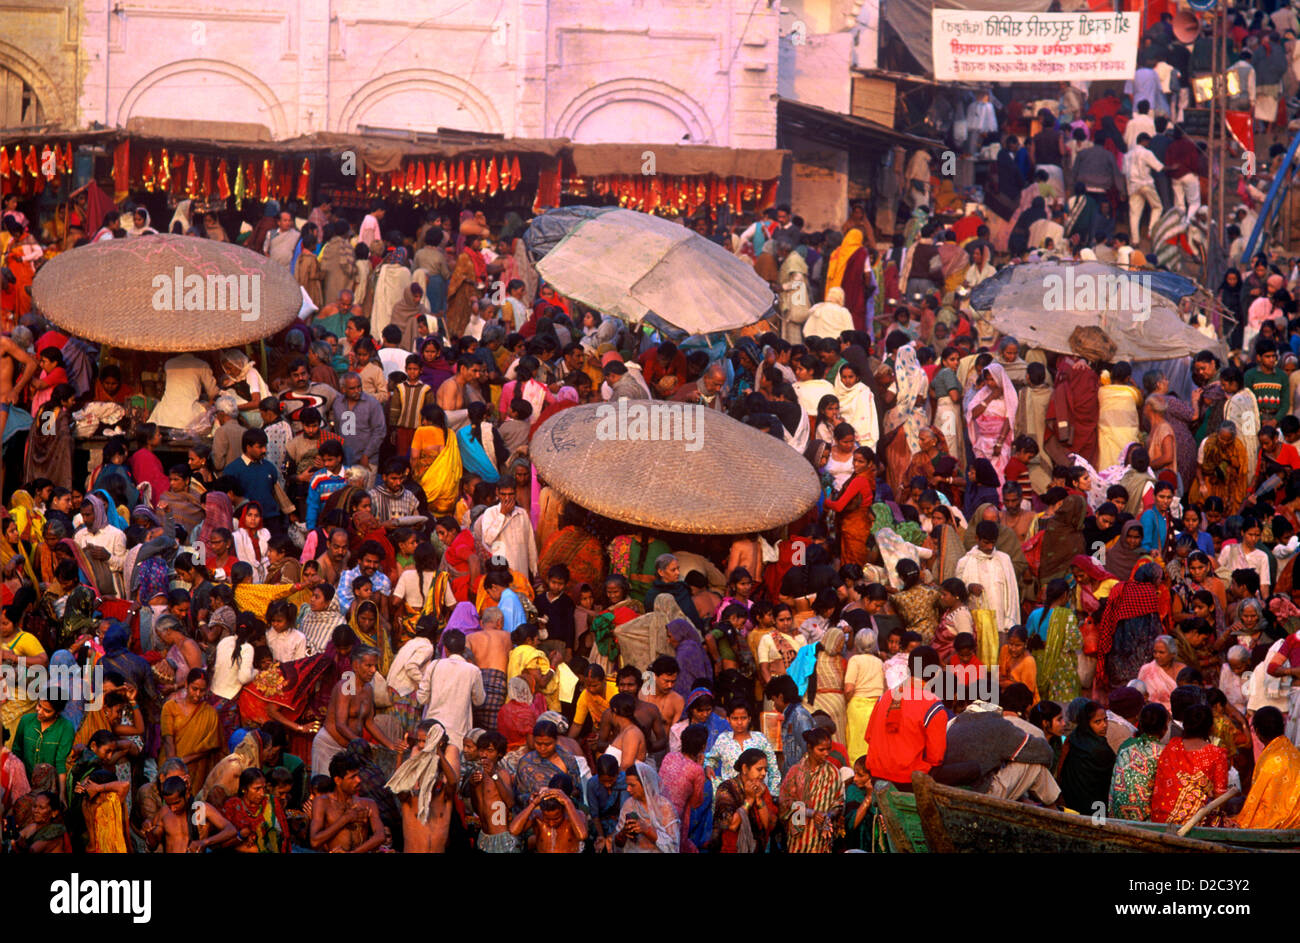 Drängen Sie sich Menschen im Markt in der Nähe von heiligen Fluss Ganges im ältesten indischen Stadt Indien Banaras jetzt Varanasi Uttar Pradesh, Indien. Stockfoto